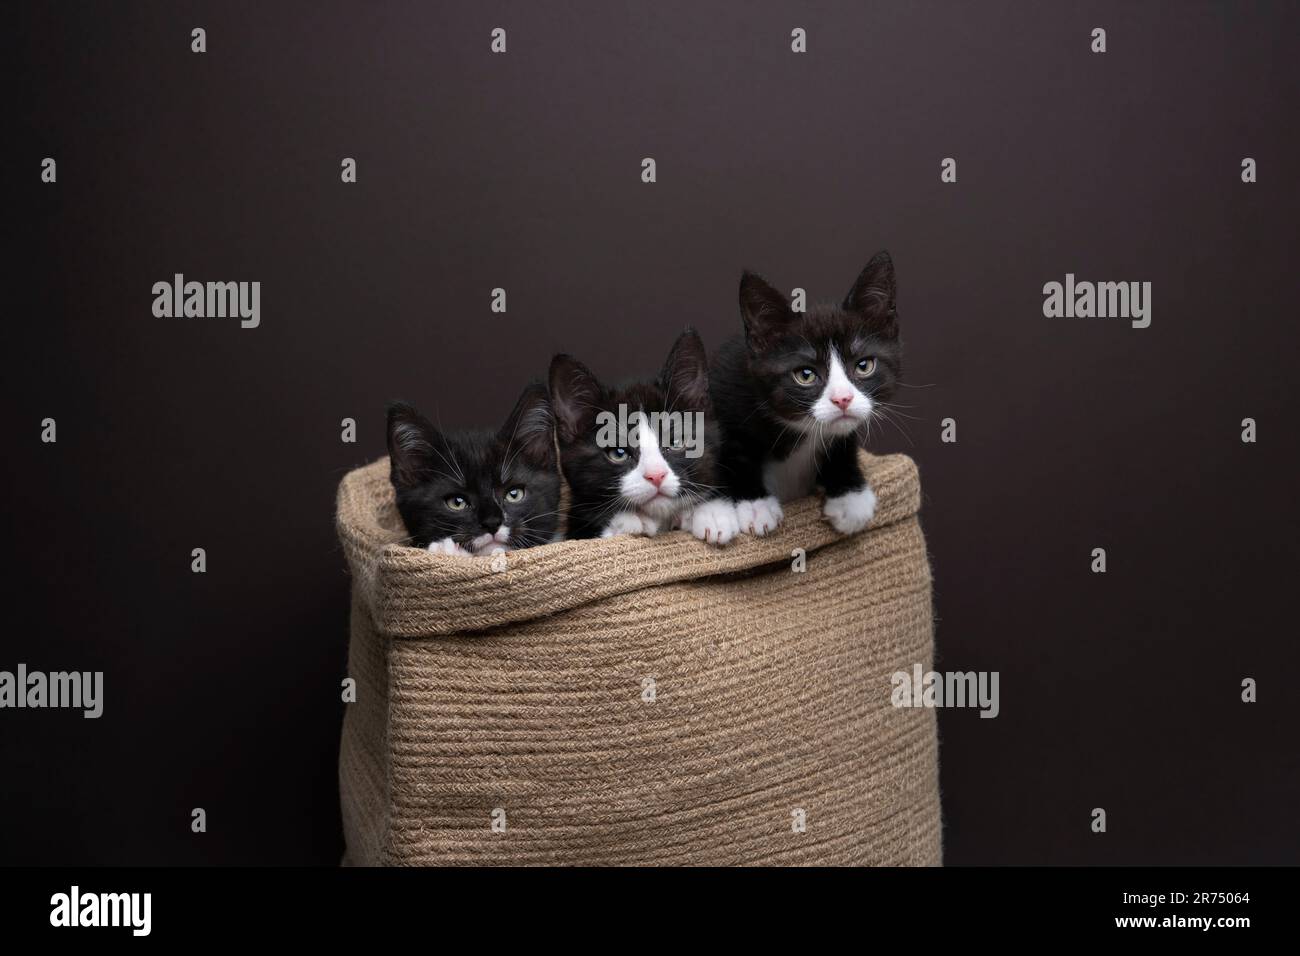 gruppo di tre cuccioli di tuxedo all'interno di un cestino che guarda curiosamente fianco a fianco, fotografia in studio su sfondo marrone scuro con spazio copia Foto Stock